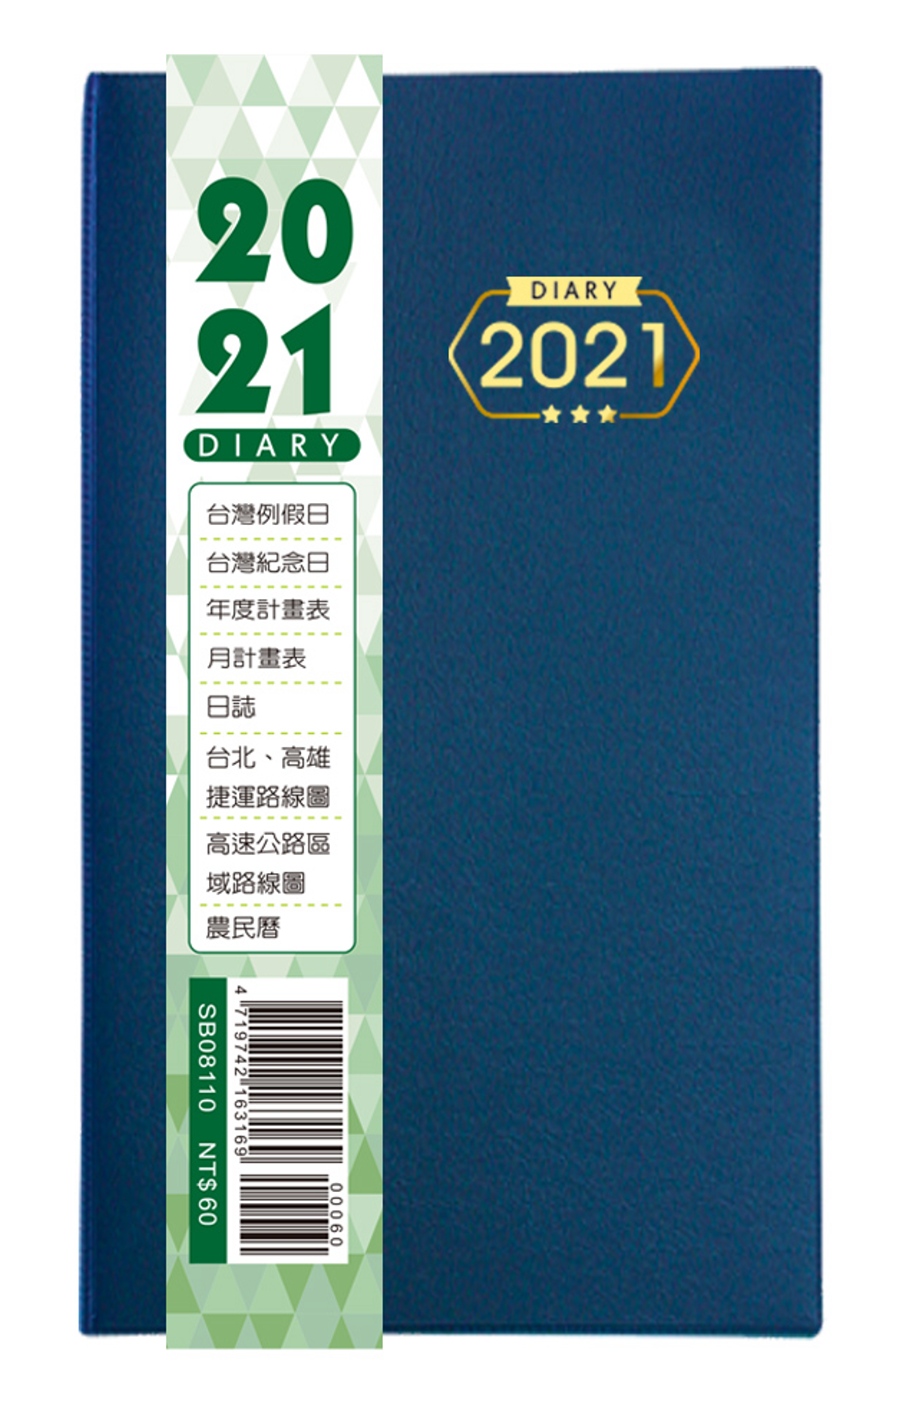 2021年掛式小日曆(牛轉乾坤)